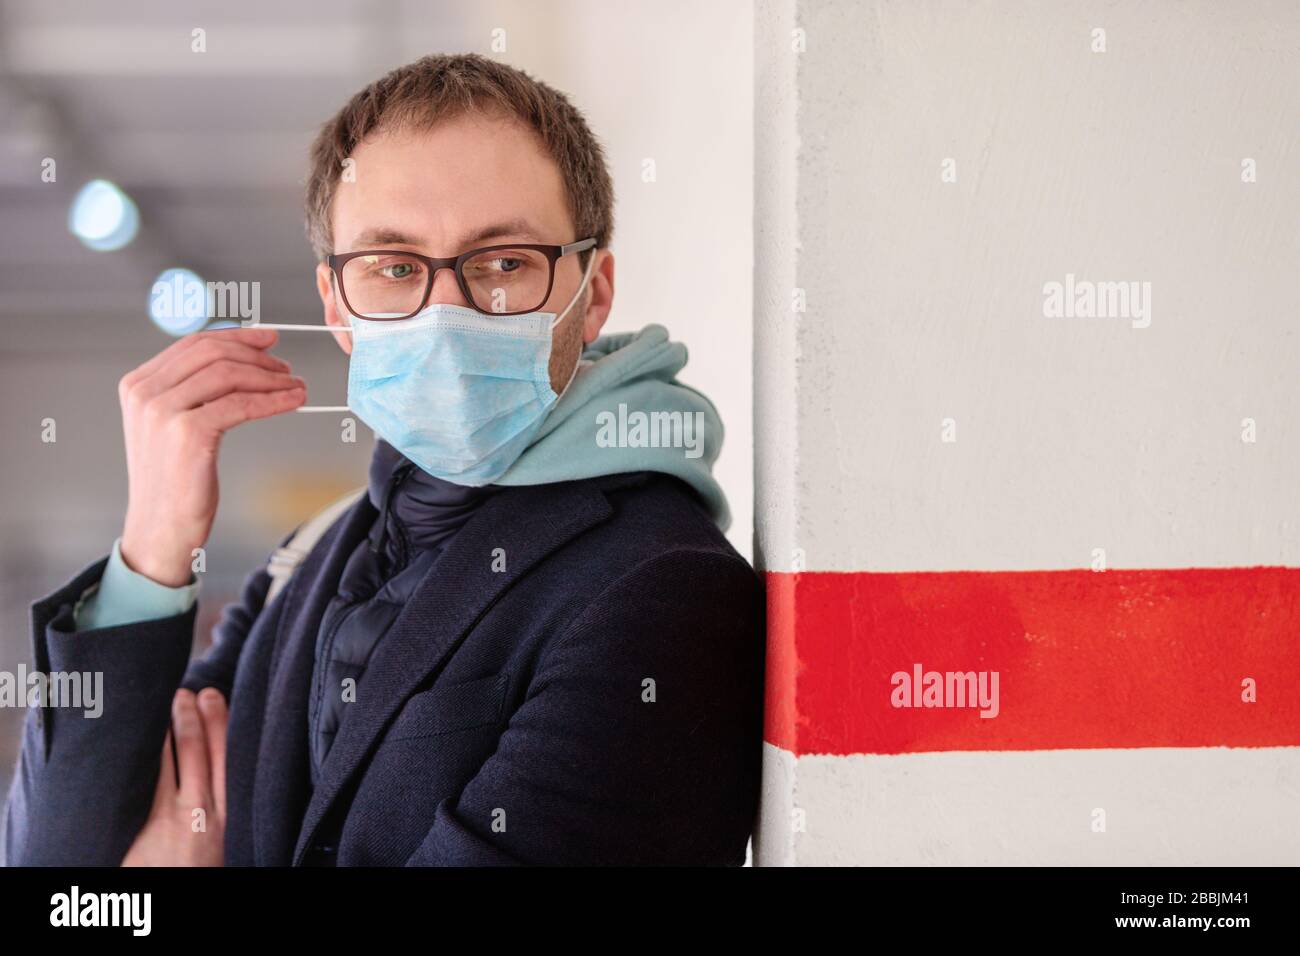 Homme européen malade dans des lunettes portant un masque médical de protection, debout près du mur avec une ligne rouge. Épidémie de grippe, allergie à la poussière et au pollen, protection Banque D'Images